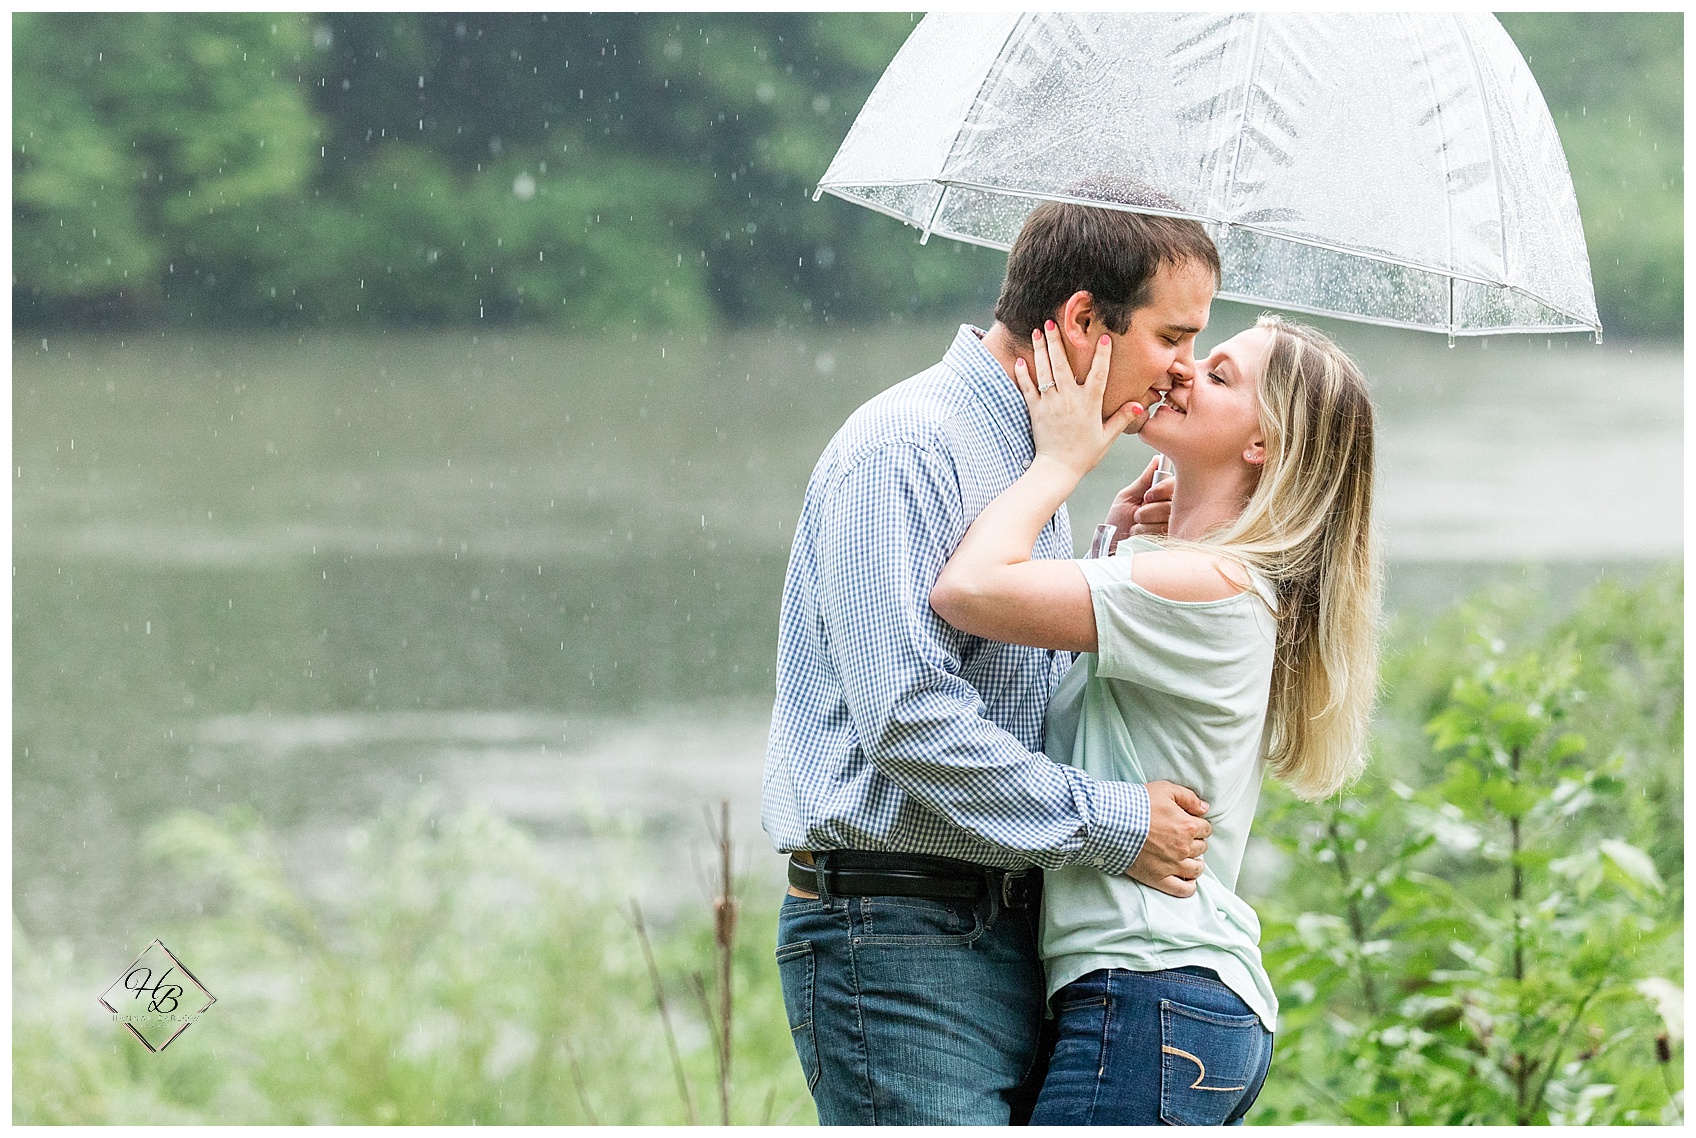 Rainy Engagement Photos under an Umbrella